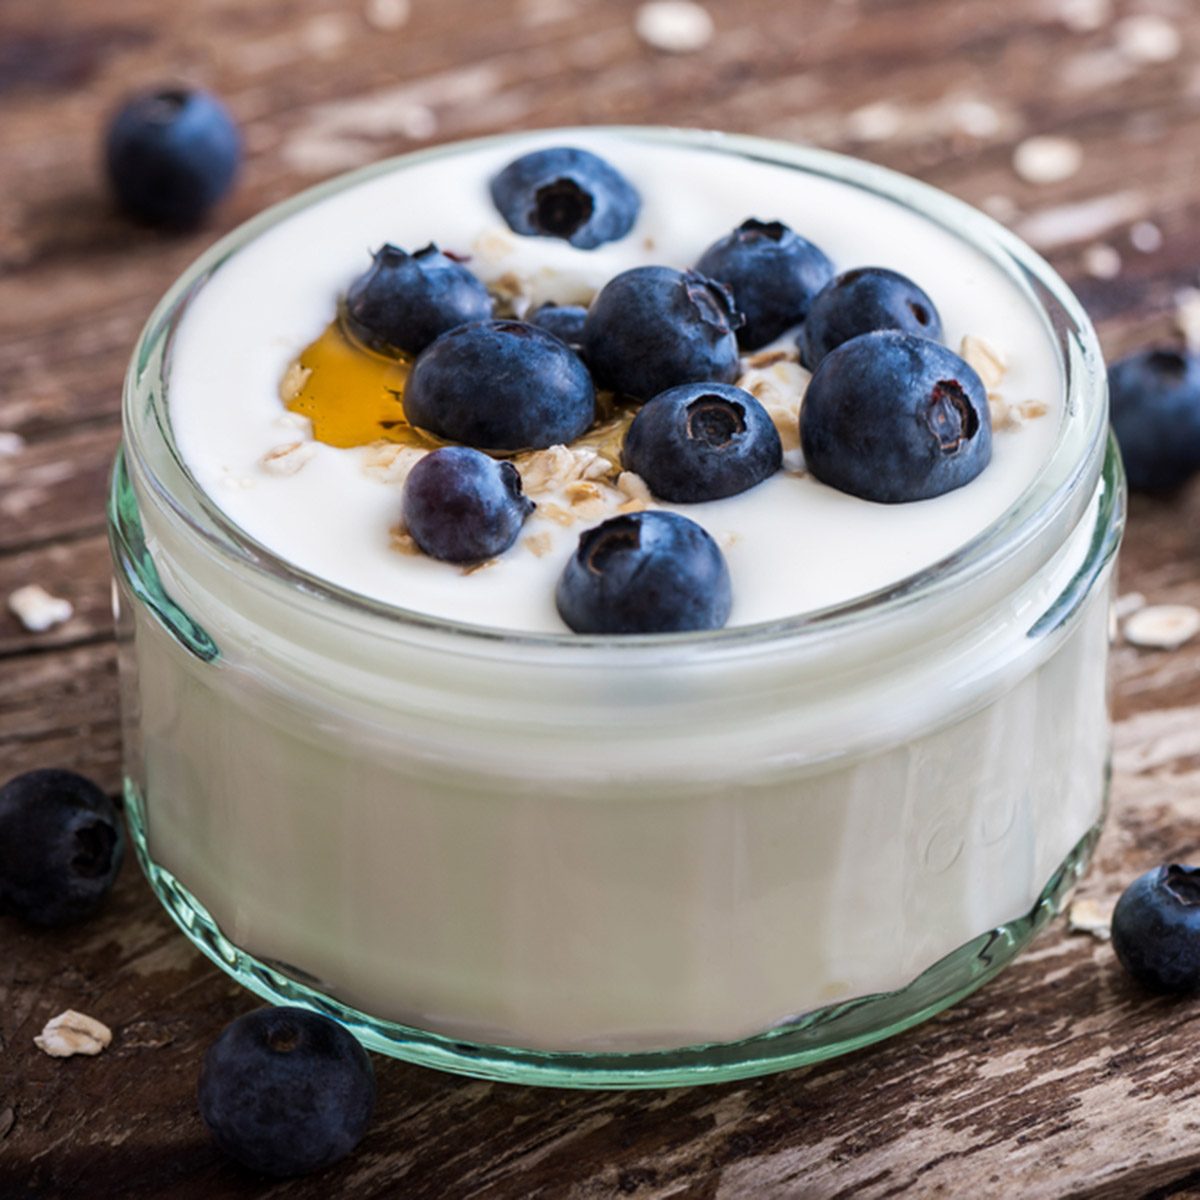 旧木桌上的酸奶、新鲜蓝莓和燕麦片。特写镜头的细节。Shutterstock ID 298272557